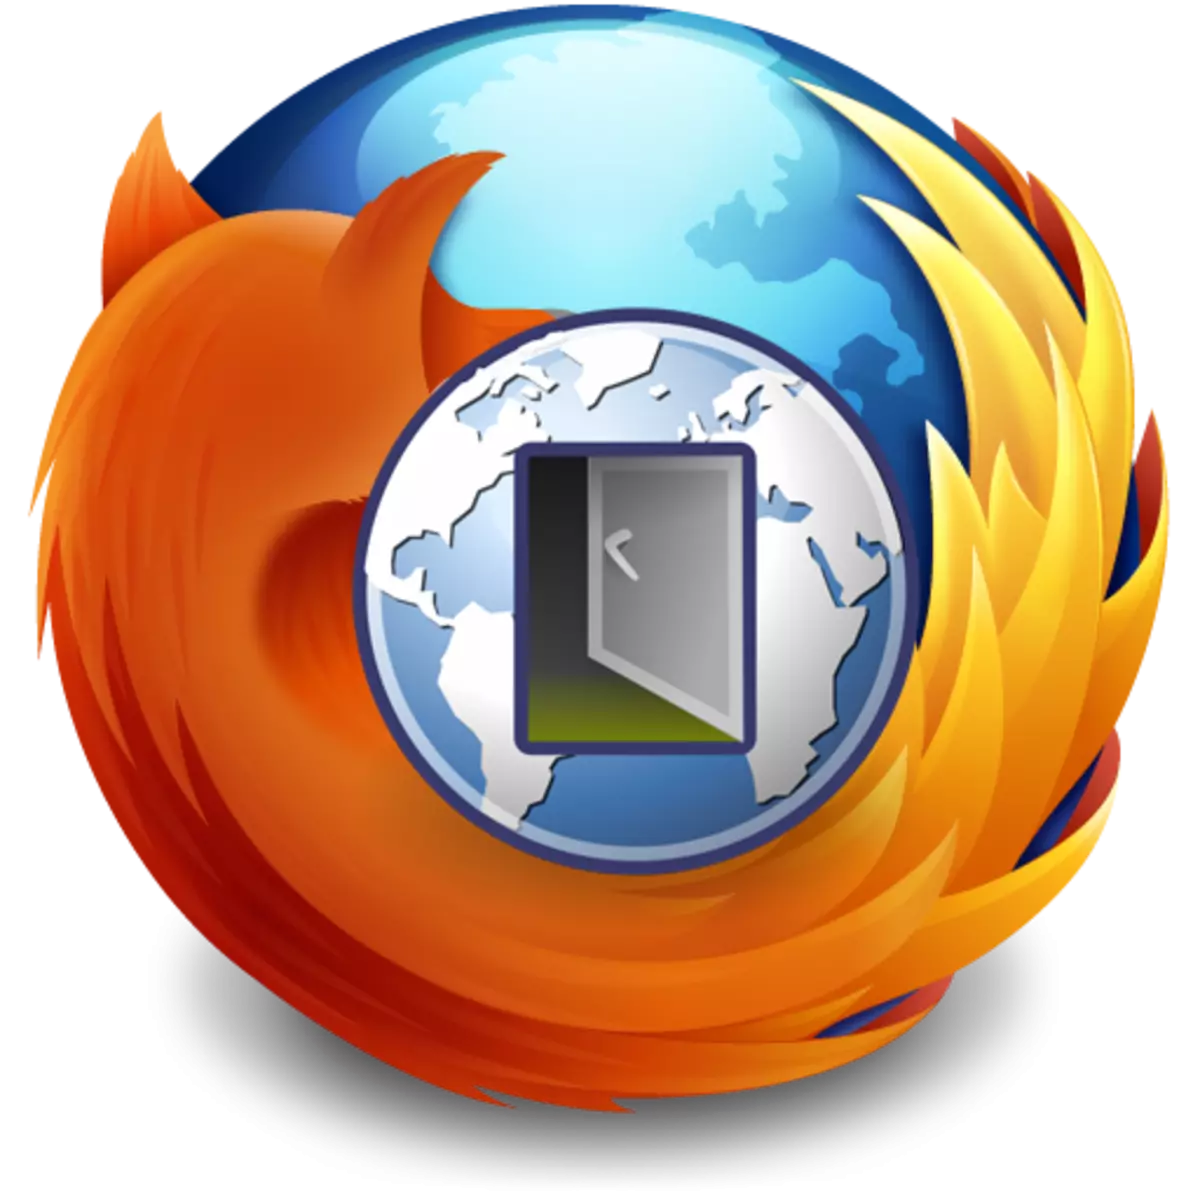 Kafa wakili a cikin Mozilla Firefox